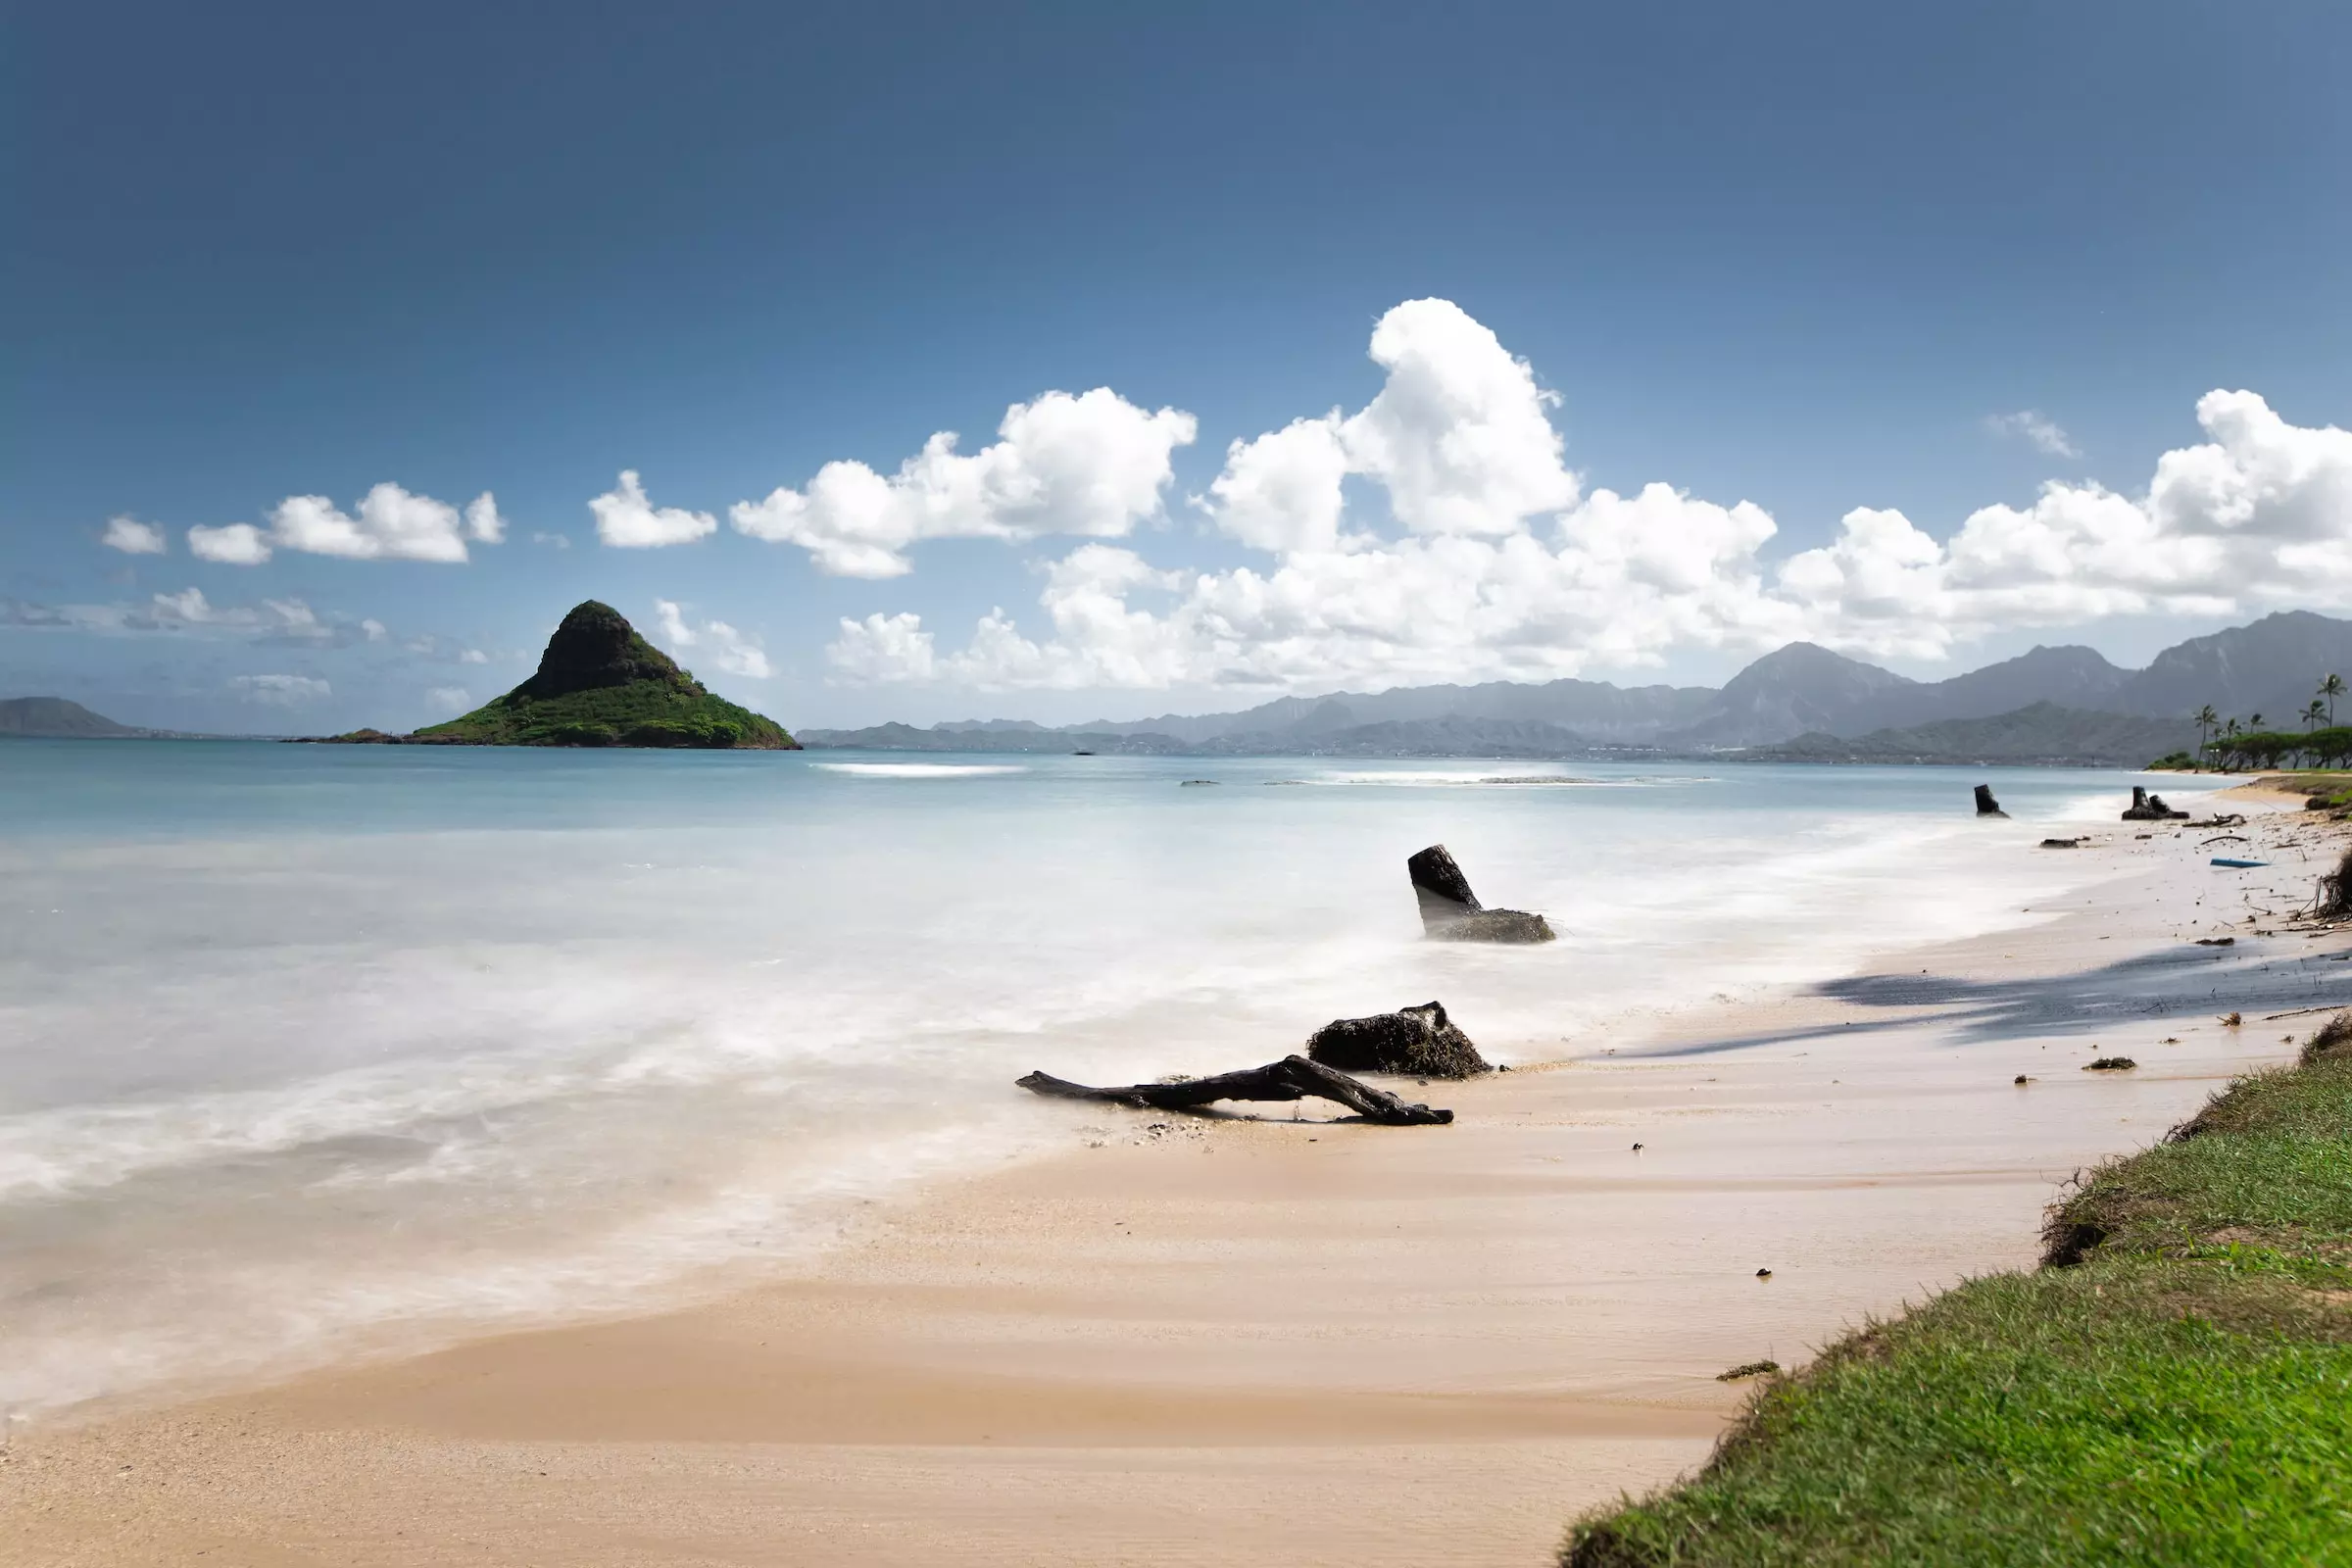 【ラニカイビーチ】ハワイの楽園の魅力・アクセス・観光情報まとめ